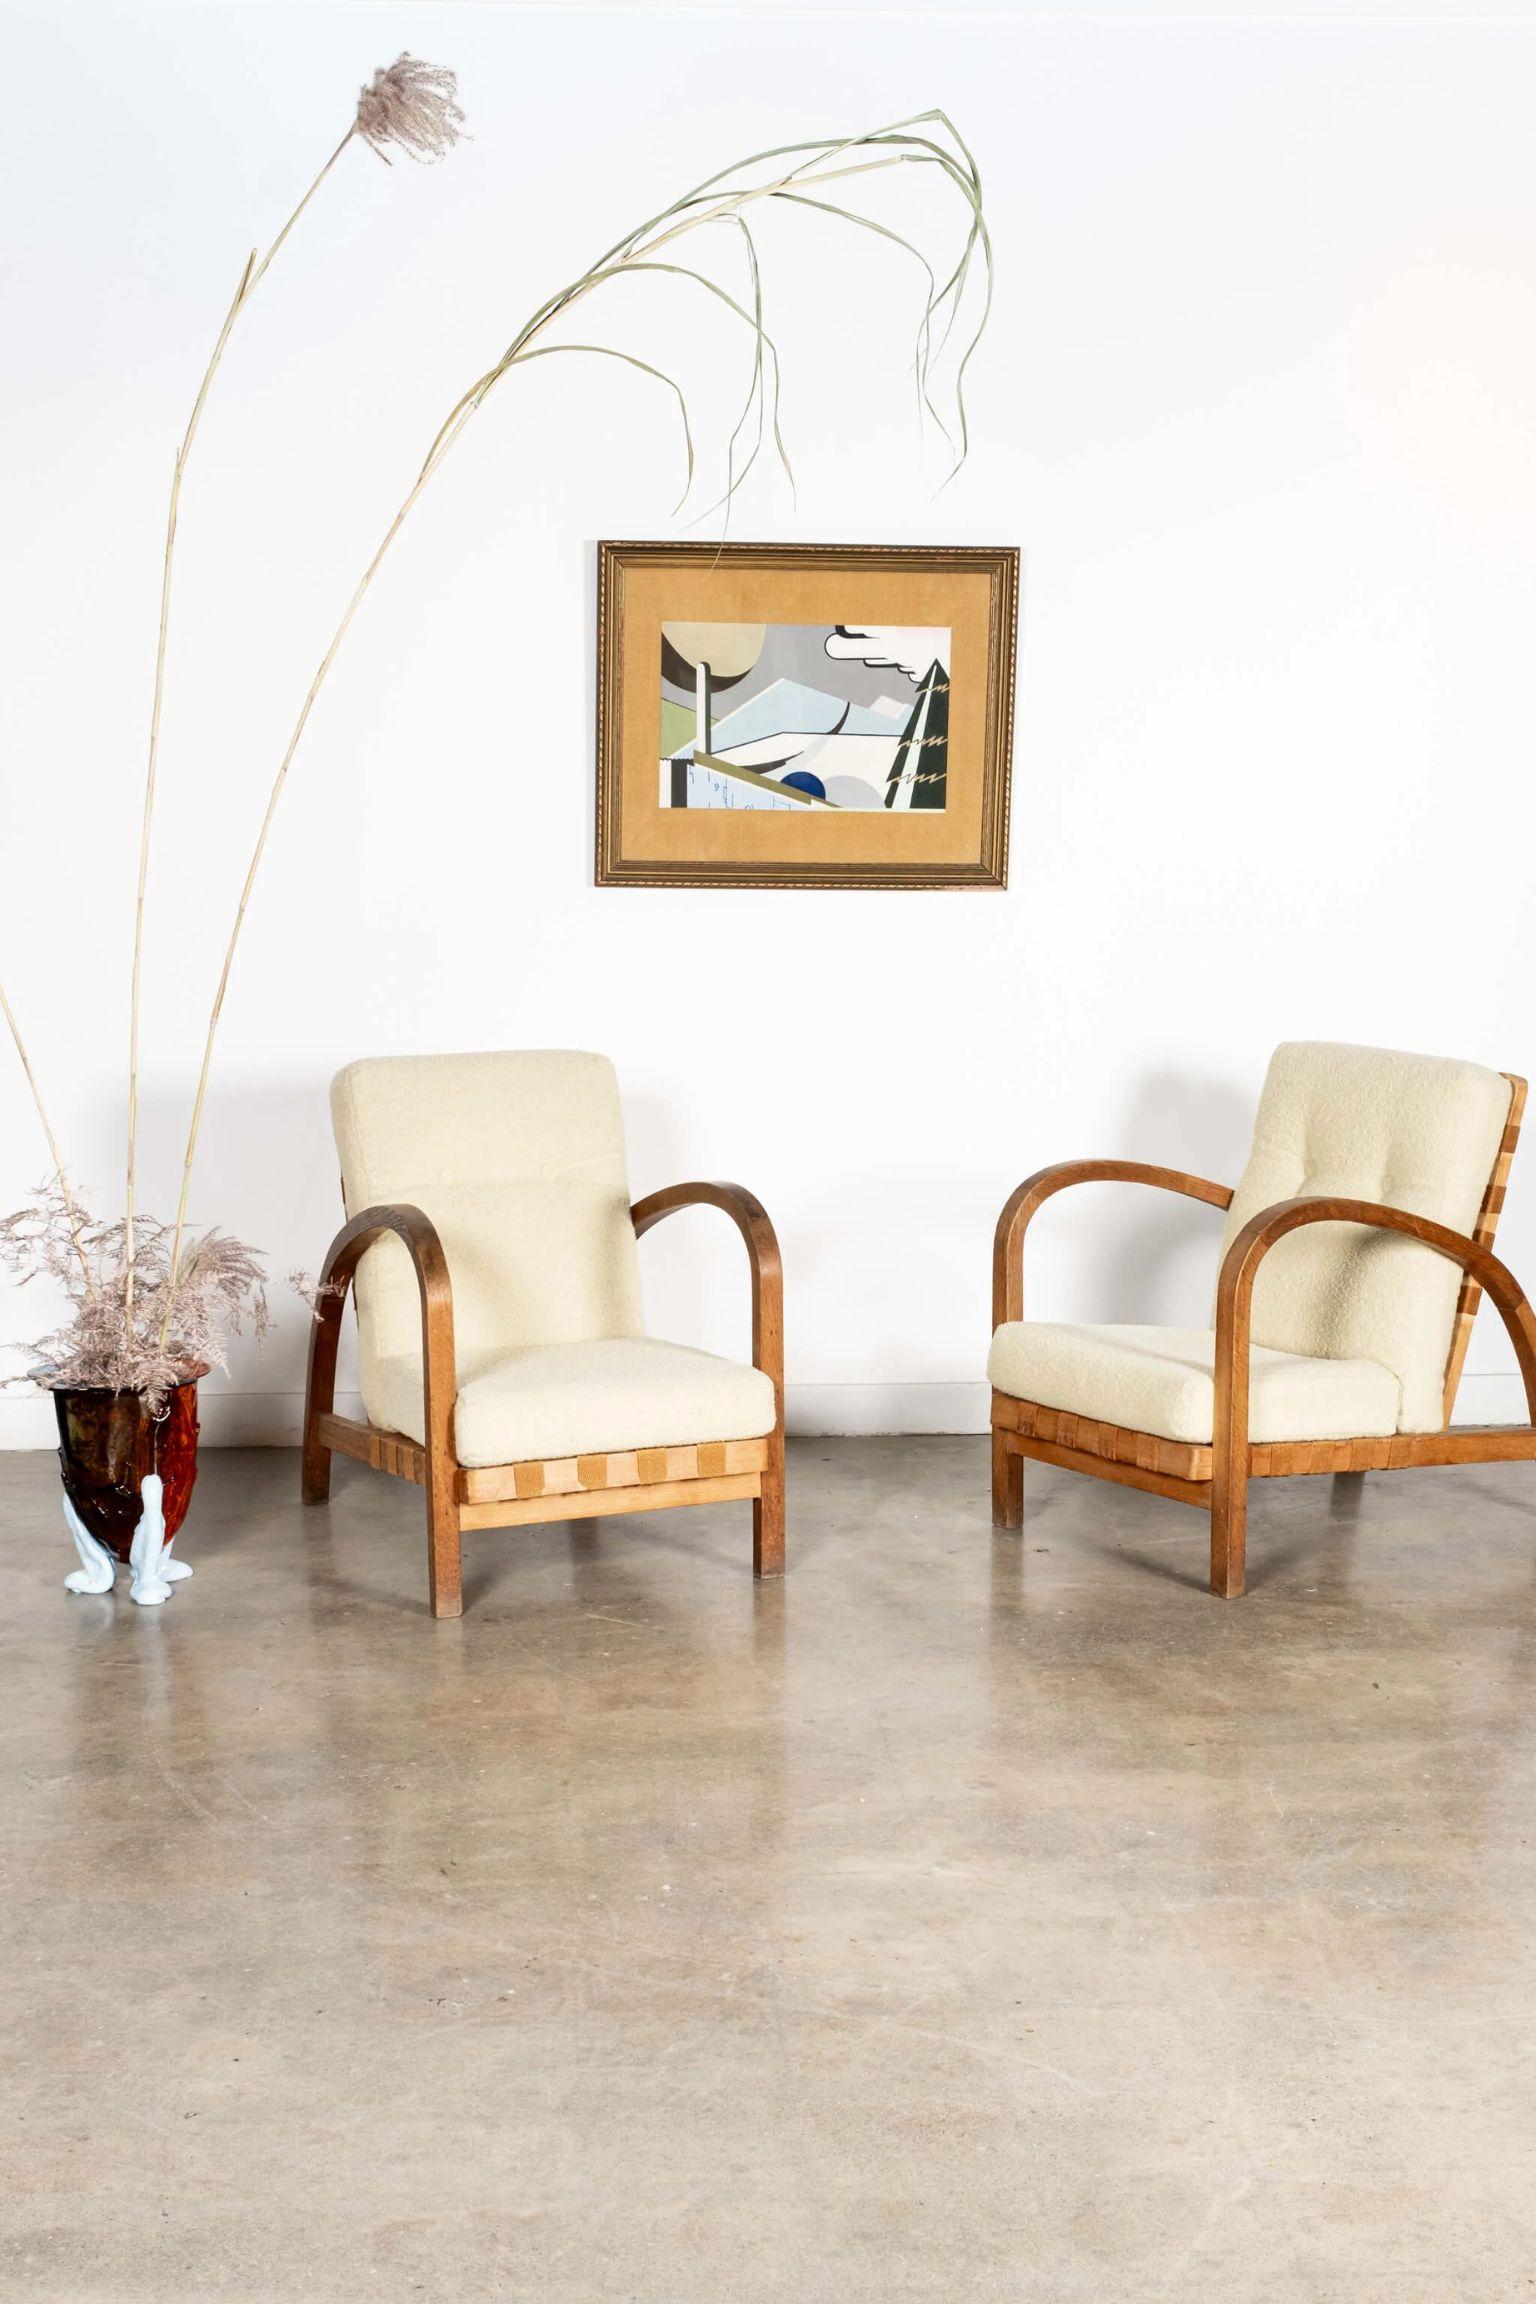 Ein Paar ausgezeichnete Stühle. Die belgischen Holzrahmen aus den 1940er Jahren sind mit geschwungenen, runden Armen und originalen Baumwollgurten ausgestattet. Aktualisiert und akzentuiert mit neuen Kissen aus einem vanillefarbenen Bouclé-Stoff. 